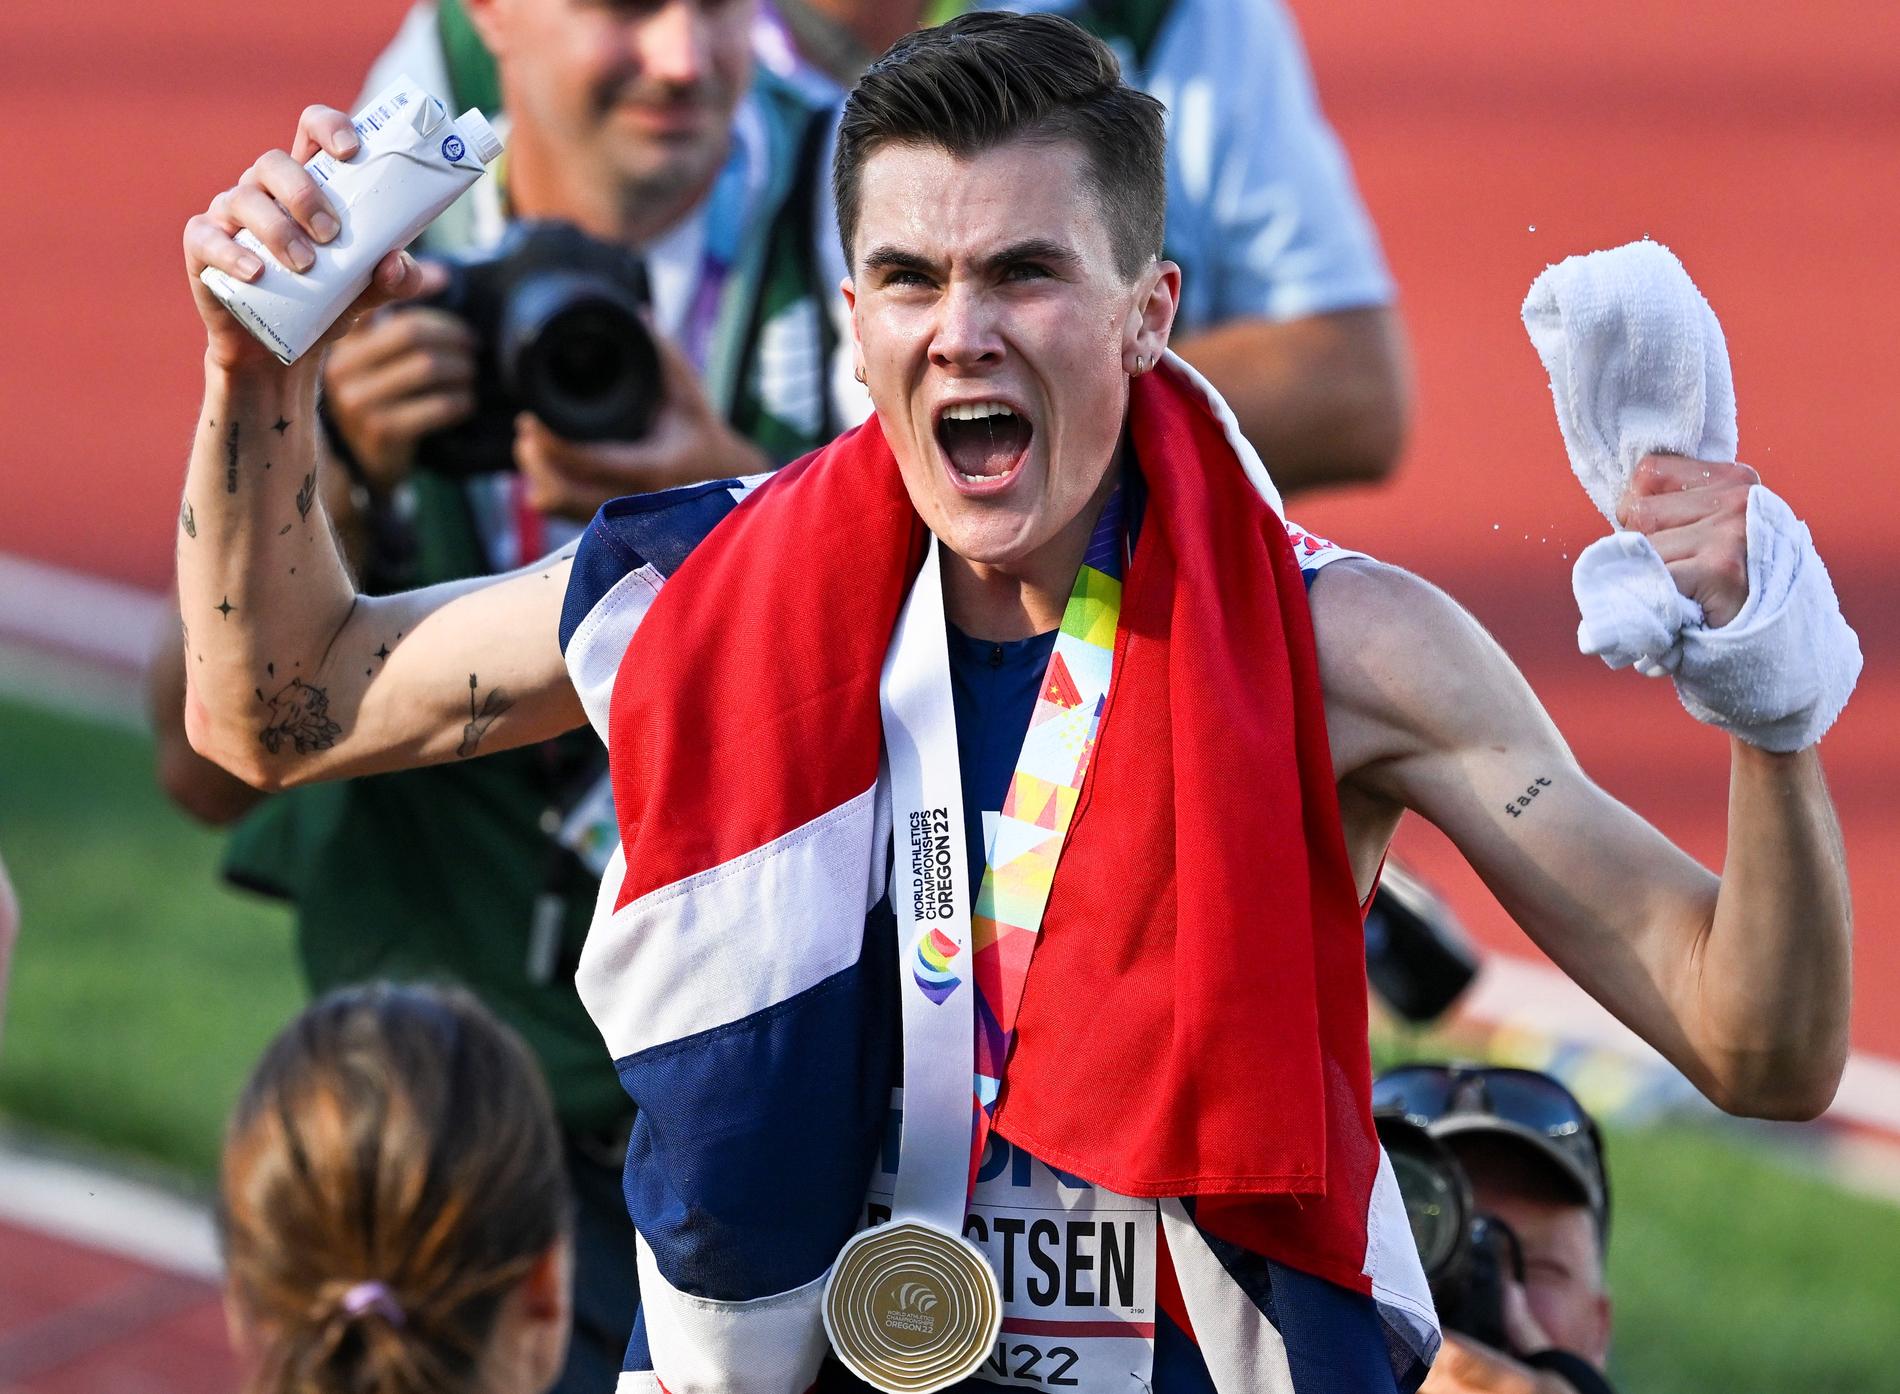 Jakob Engebrigtsen è quinto nell’atleta mondiale dell’anno